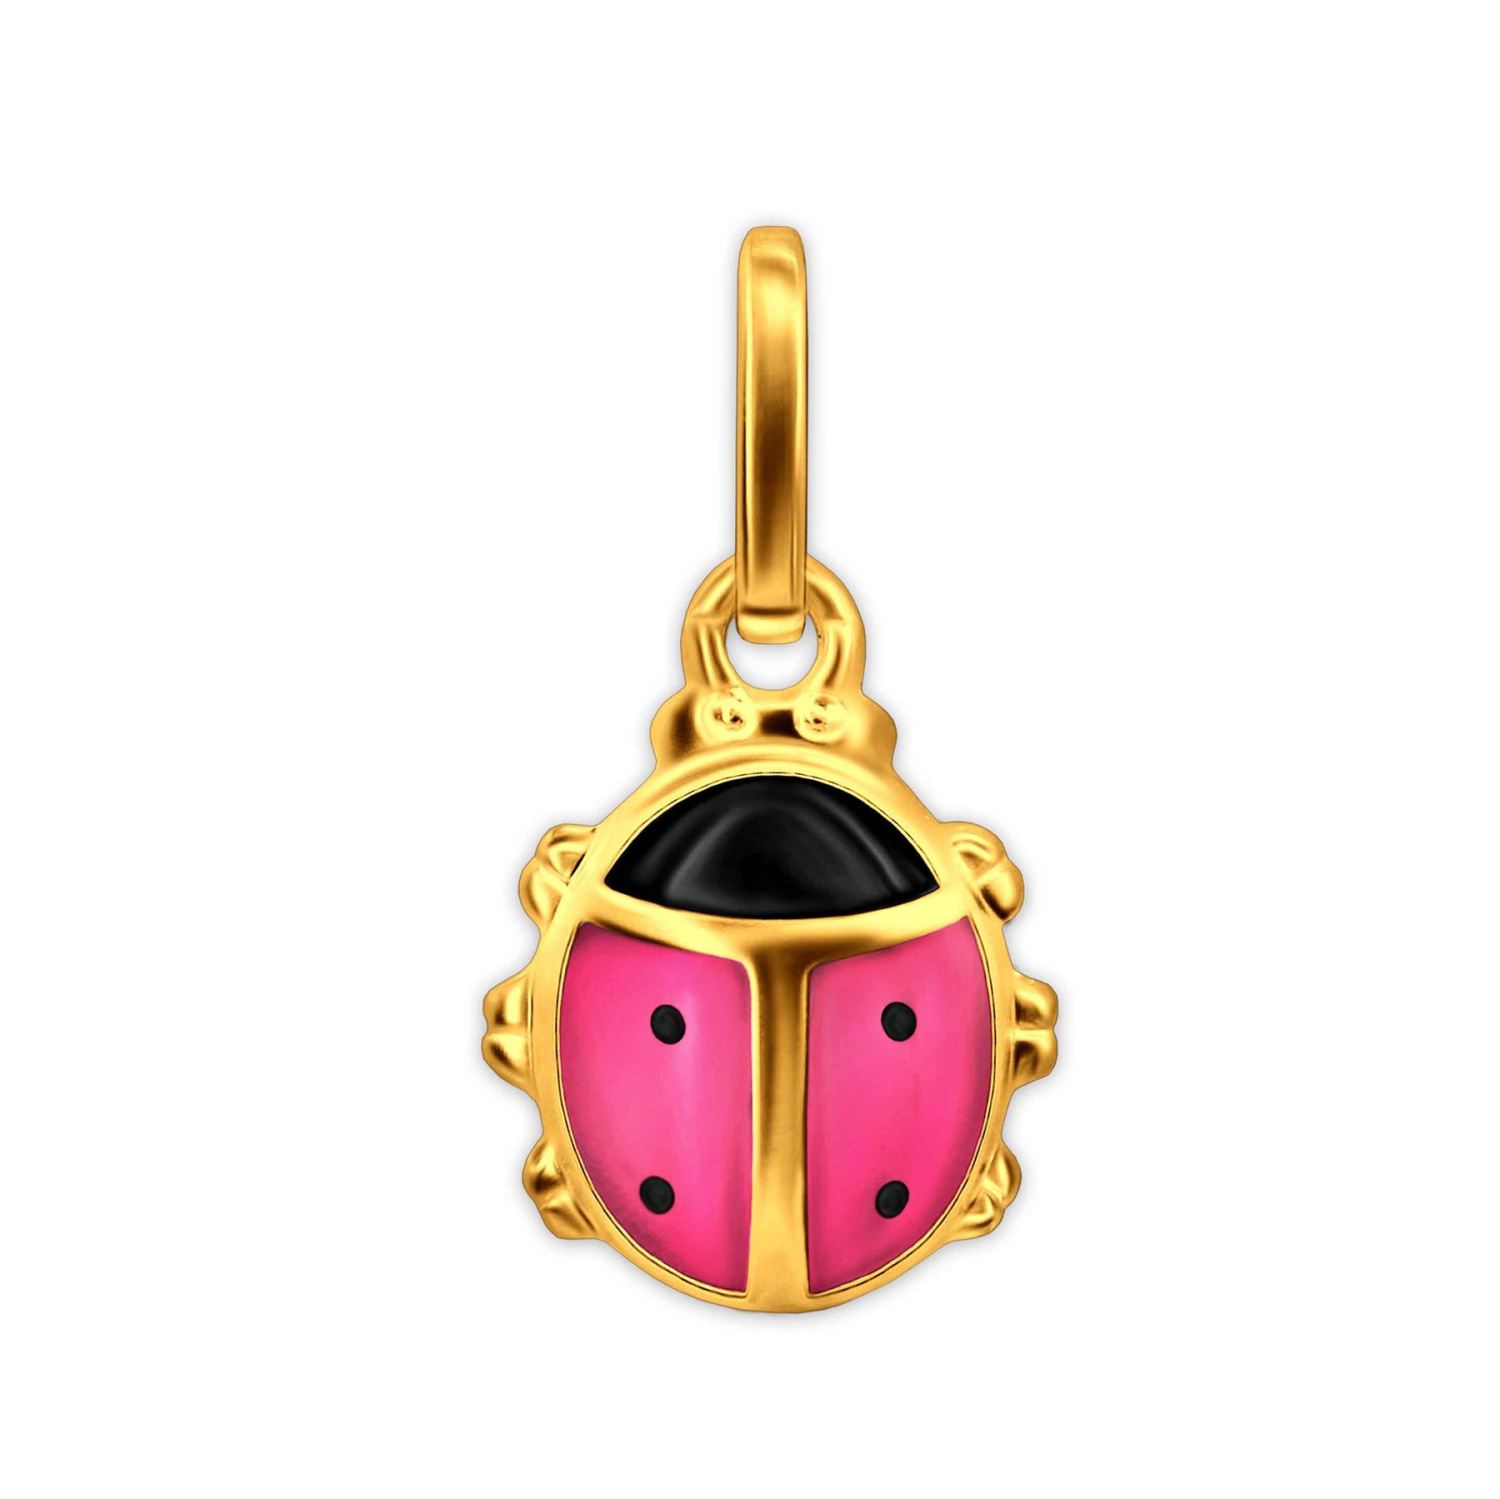 Goldener Kinder Anhänger Mini-Marienkäfer rosa und schwarz lackiert 333 GOLD 8 KARAT